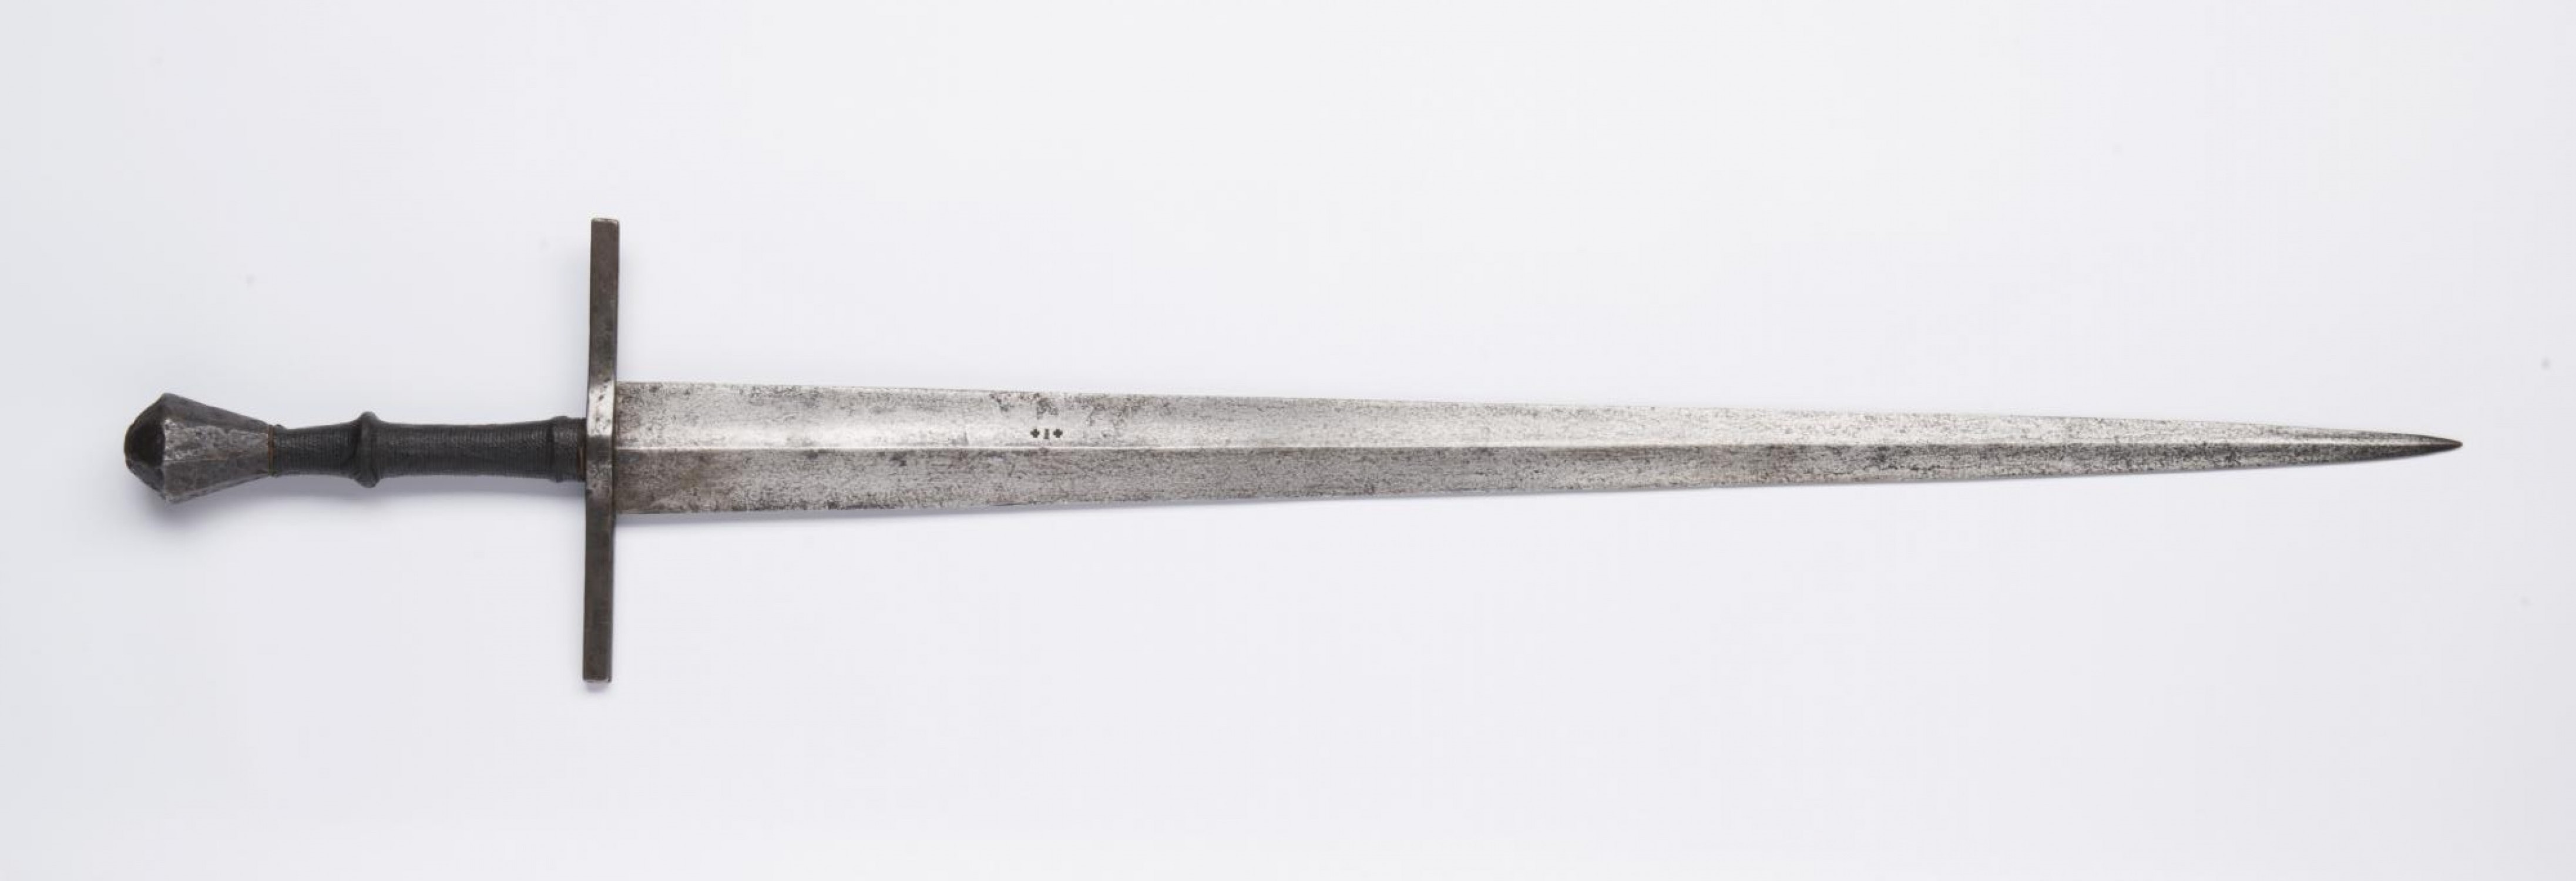 9/ jedenapůlruční meč, 1420-1460 železo, kůže, dřevo, délka 98 cm  dosažená cena: 235 600 Kč Arthouse Hejtmánek 31. 5. 2018